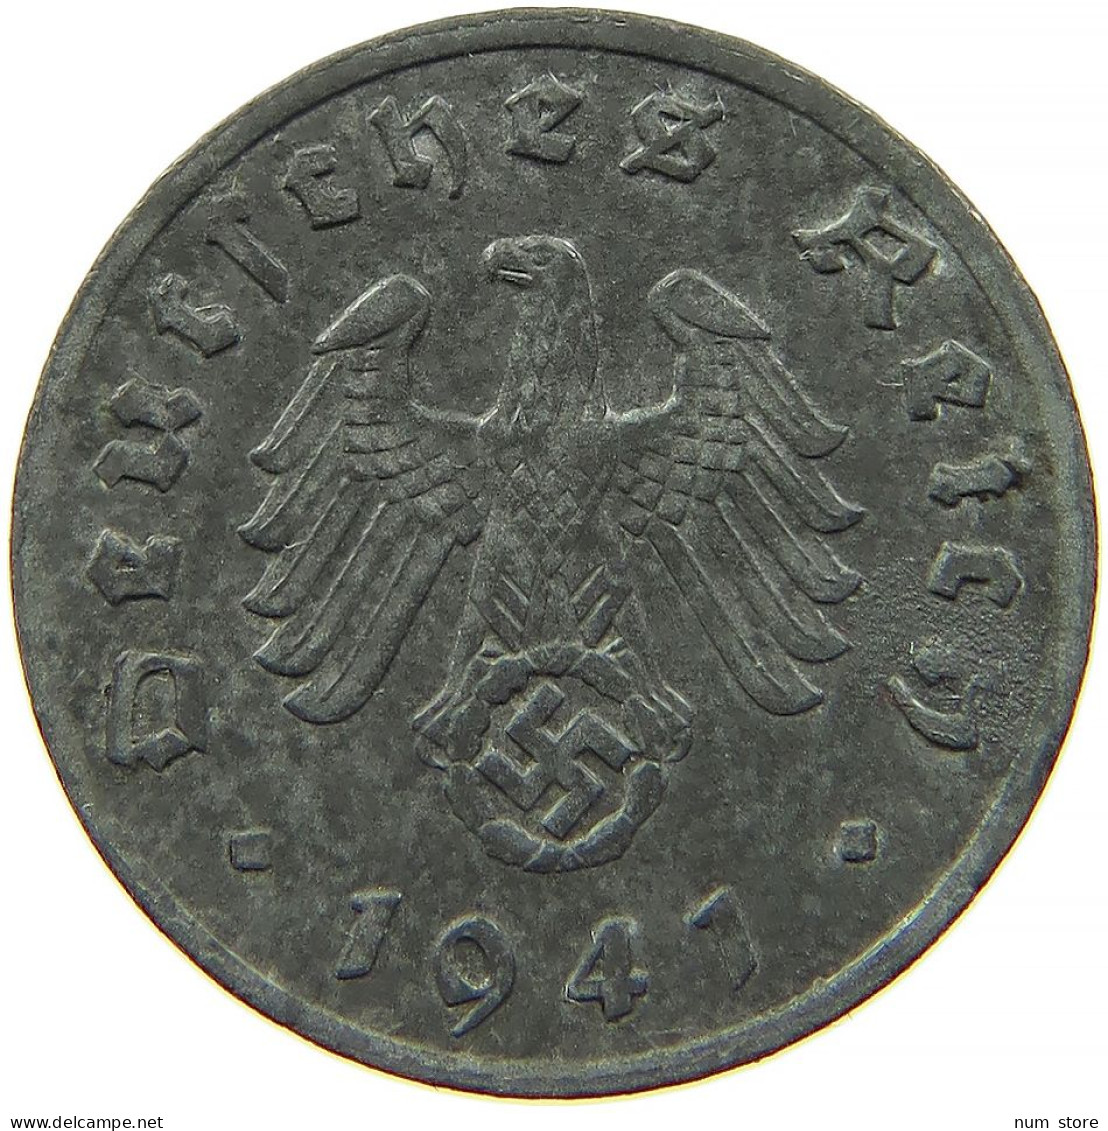 GERMANY 1 REICHSPFENNIG 1941 F #s091 1157 - 1 Reichspfennig